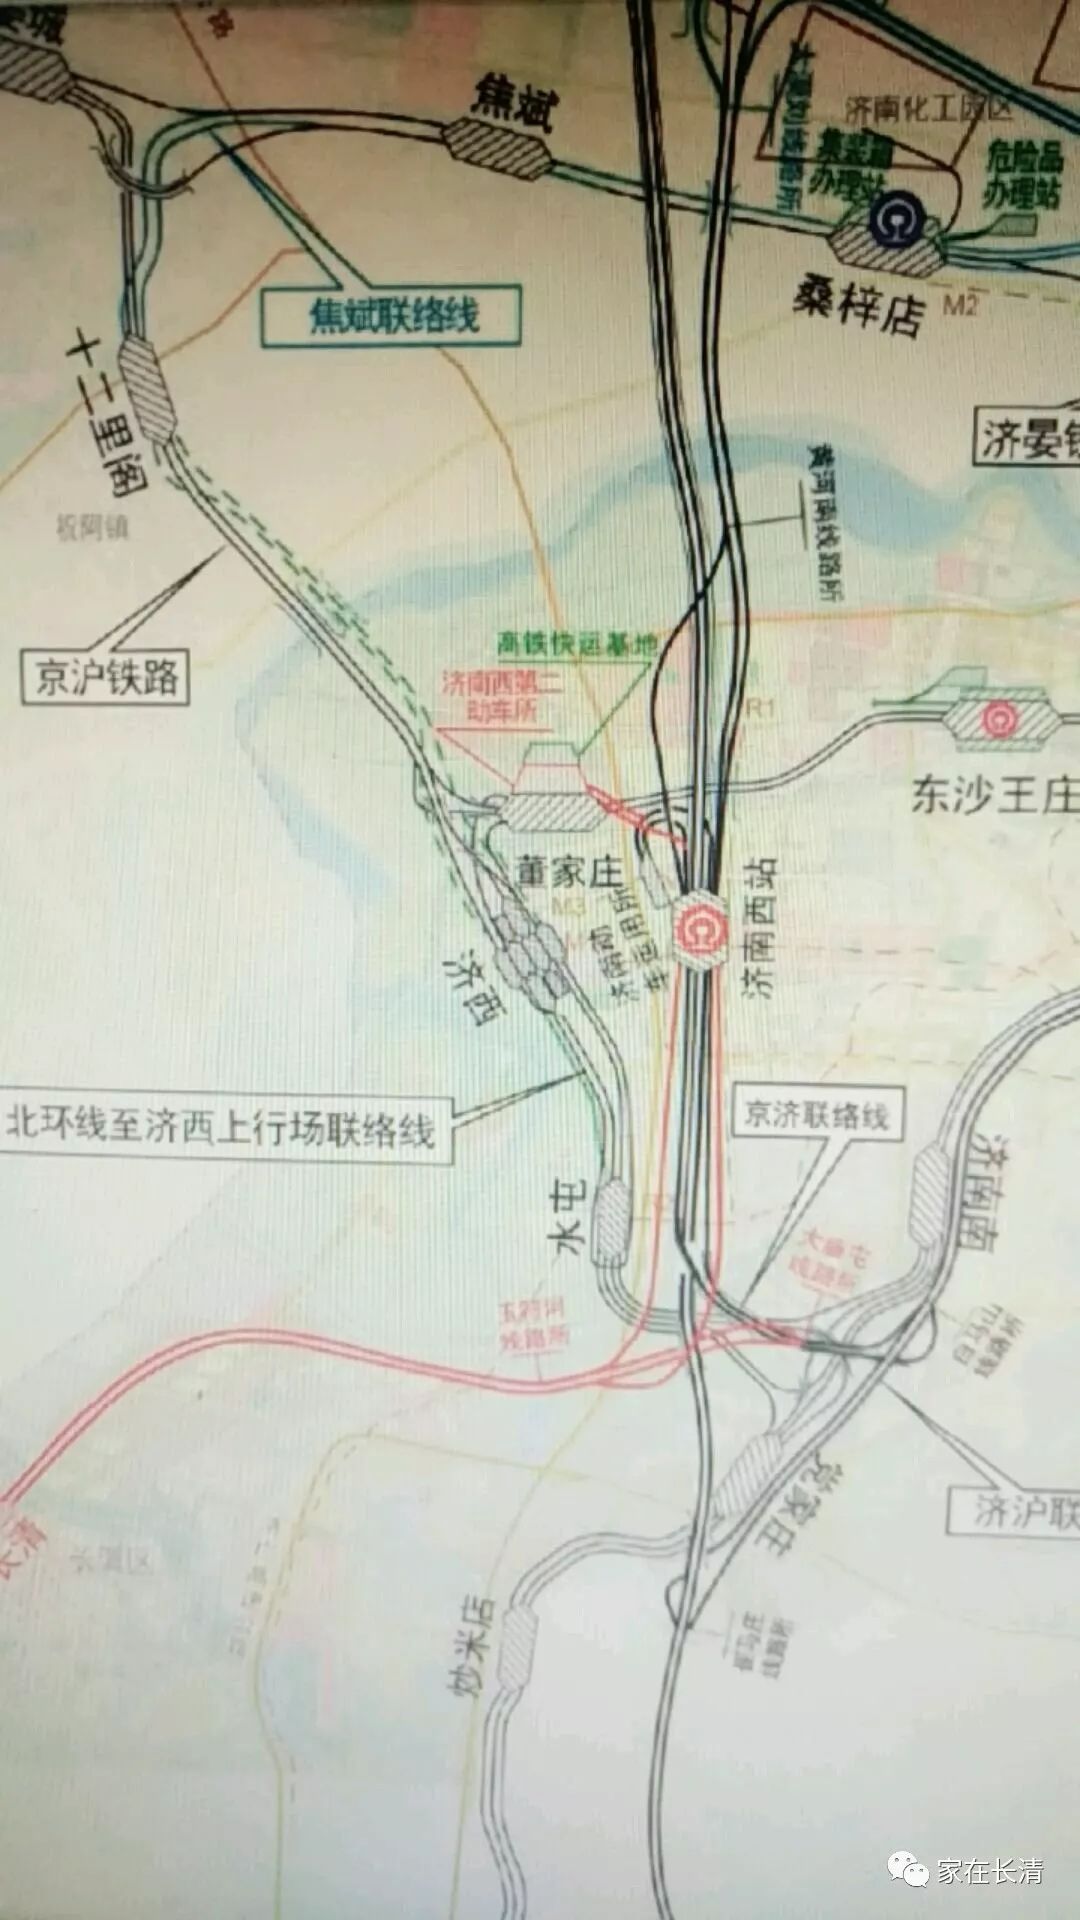 根据最新的资料显示,郑济高铁将在济南市长清区归德街道北部董洼村